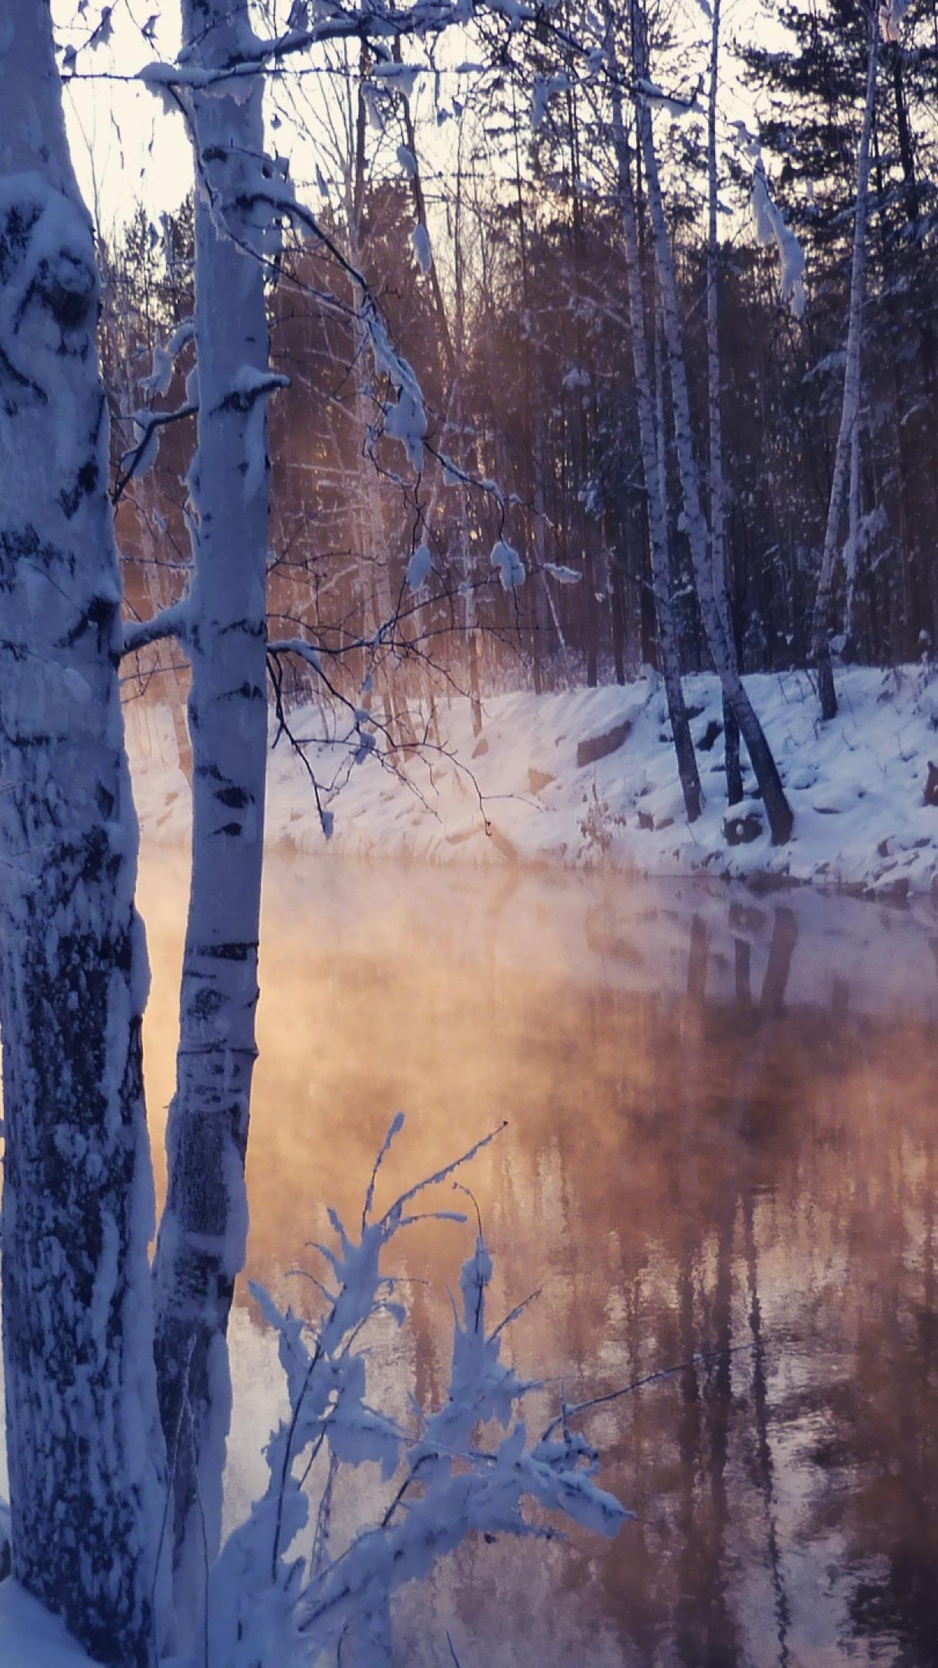 Картинка: Зима, холод, деревья, снег, озеро, отражение